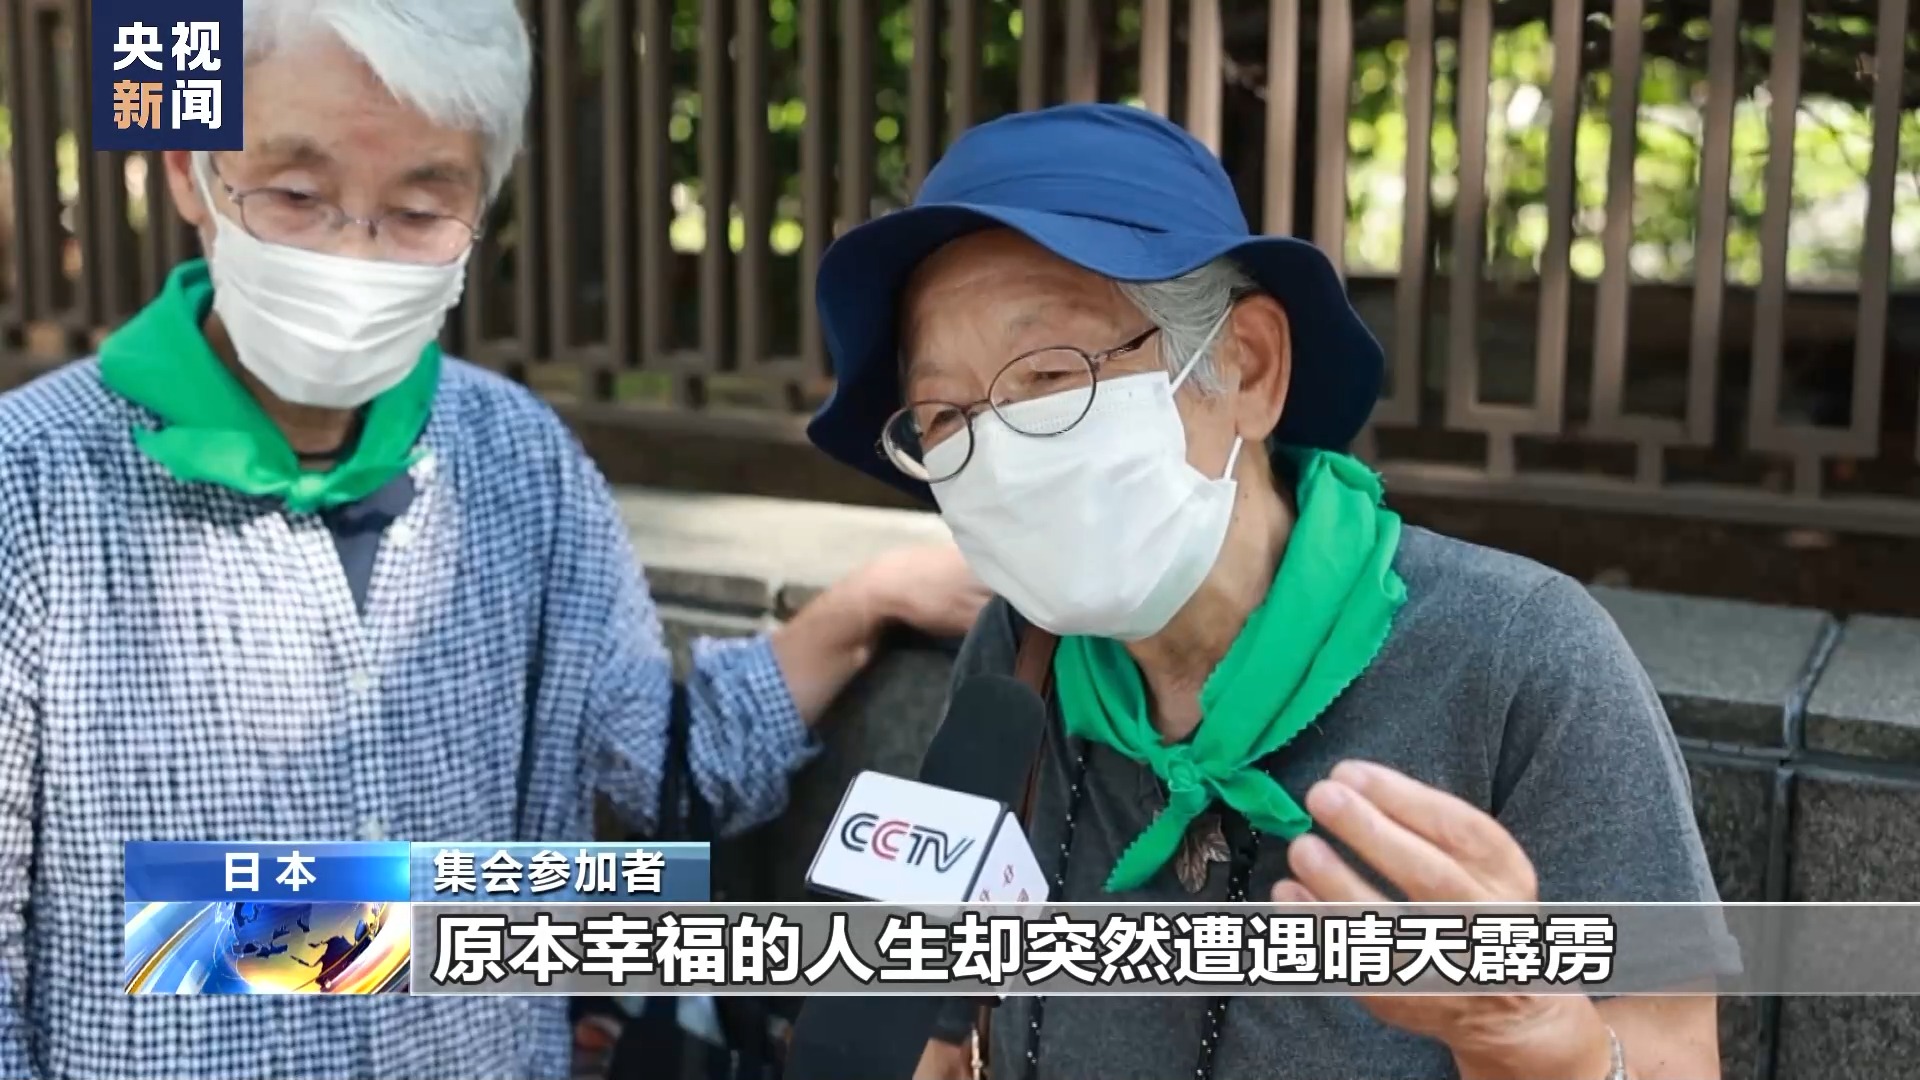 日本福岛县甲状腺癌患者状告东京电力公司 民众集会声援4